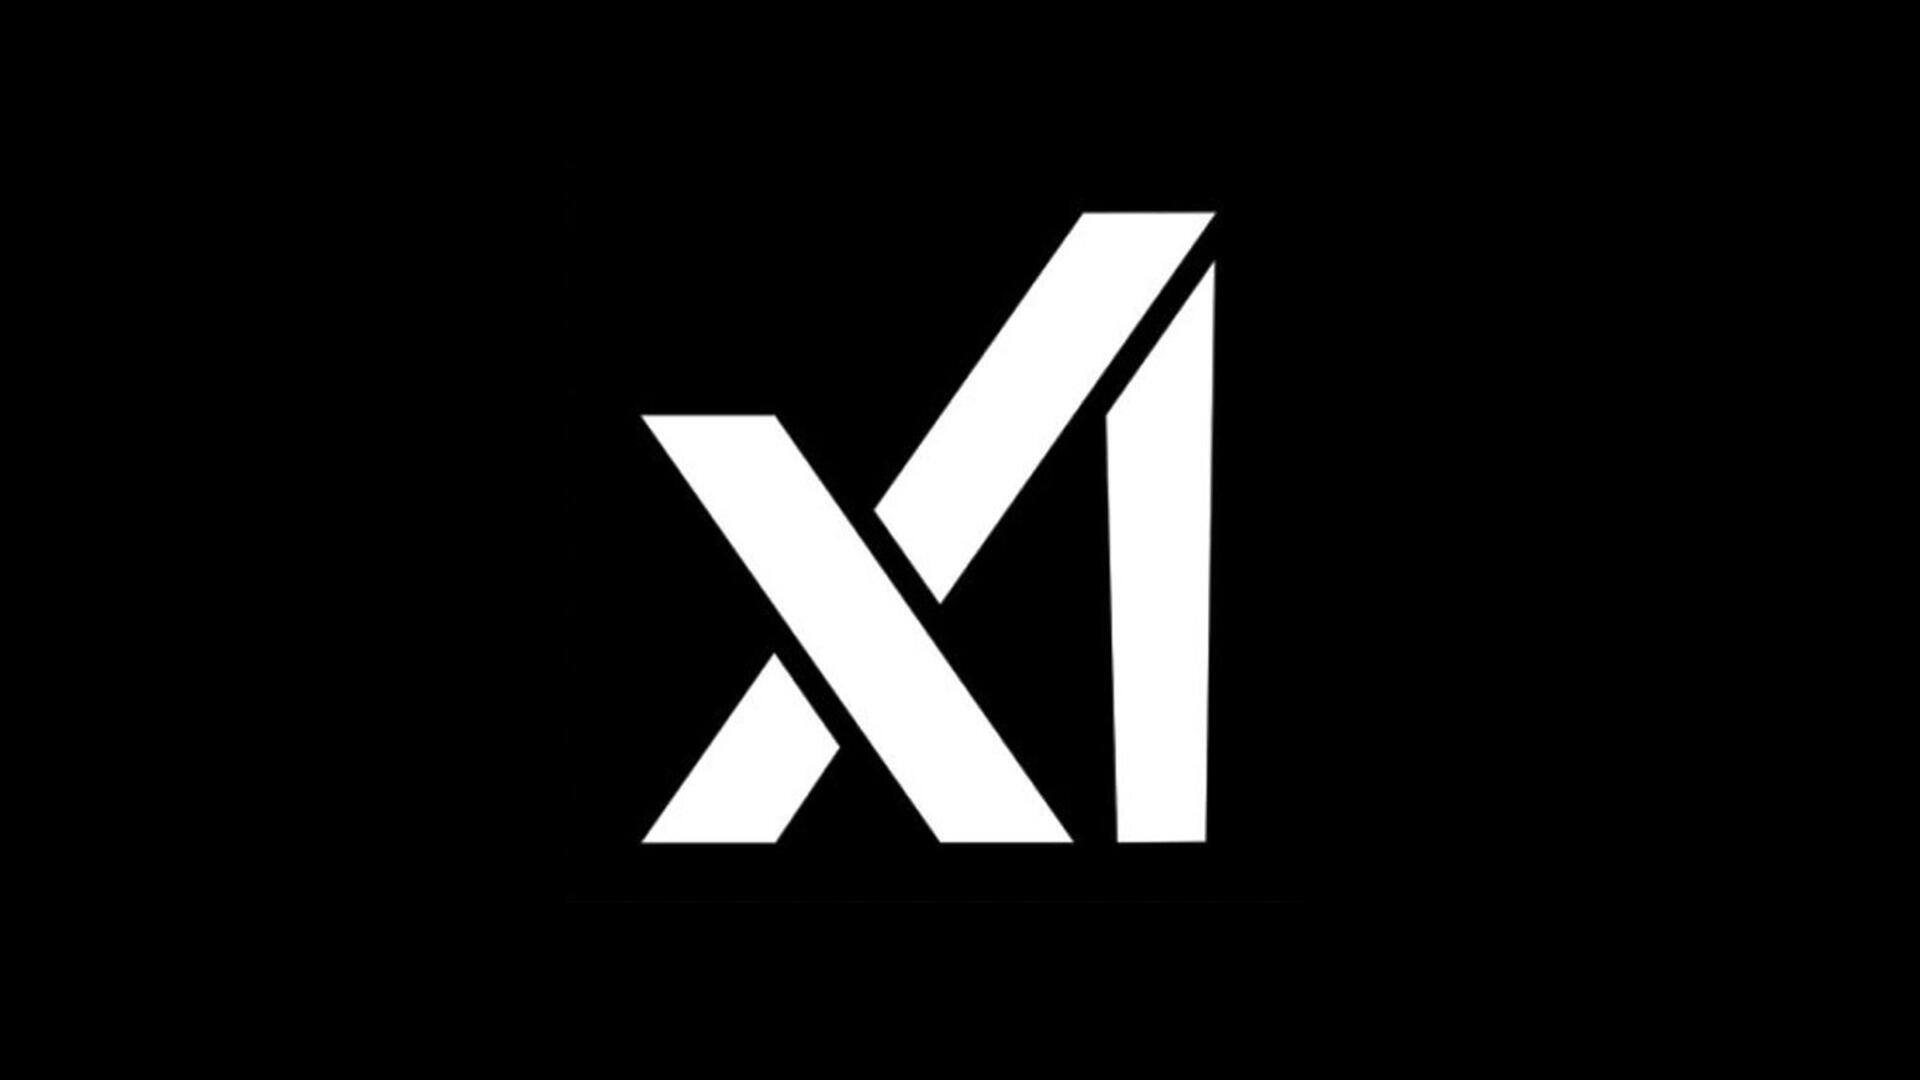 xAI आज जारी करेगी अपना AI चैटबॉट ग्रोक, एक्स प्रीमियम+ यूजर्स कर सकेंगे उपयोग 